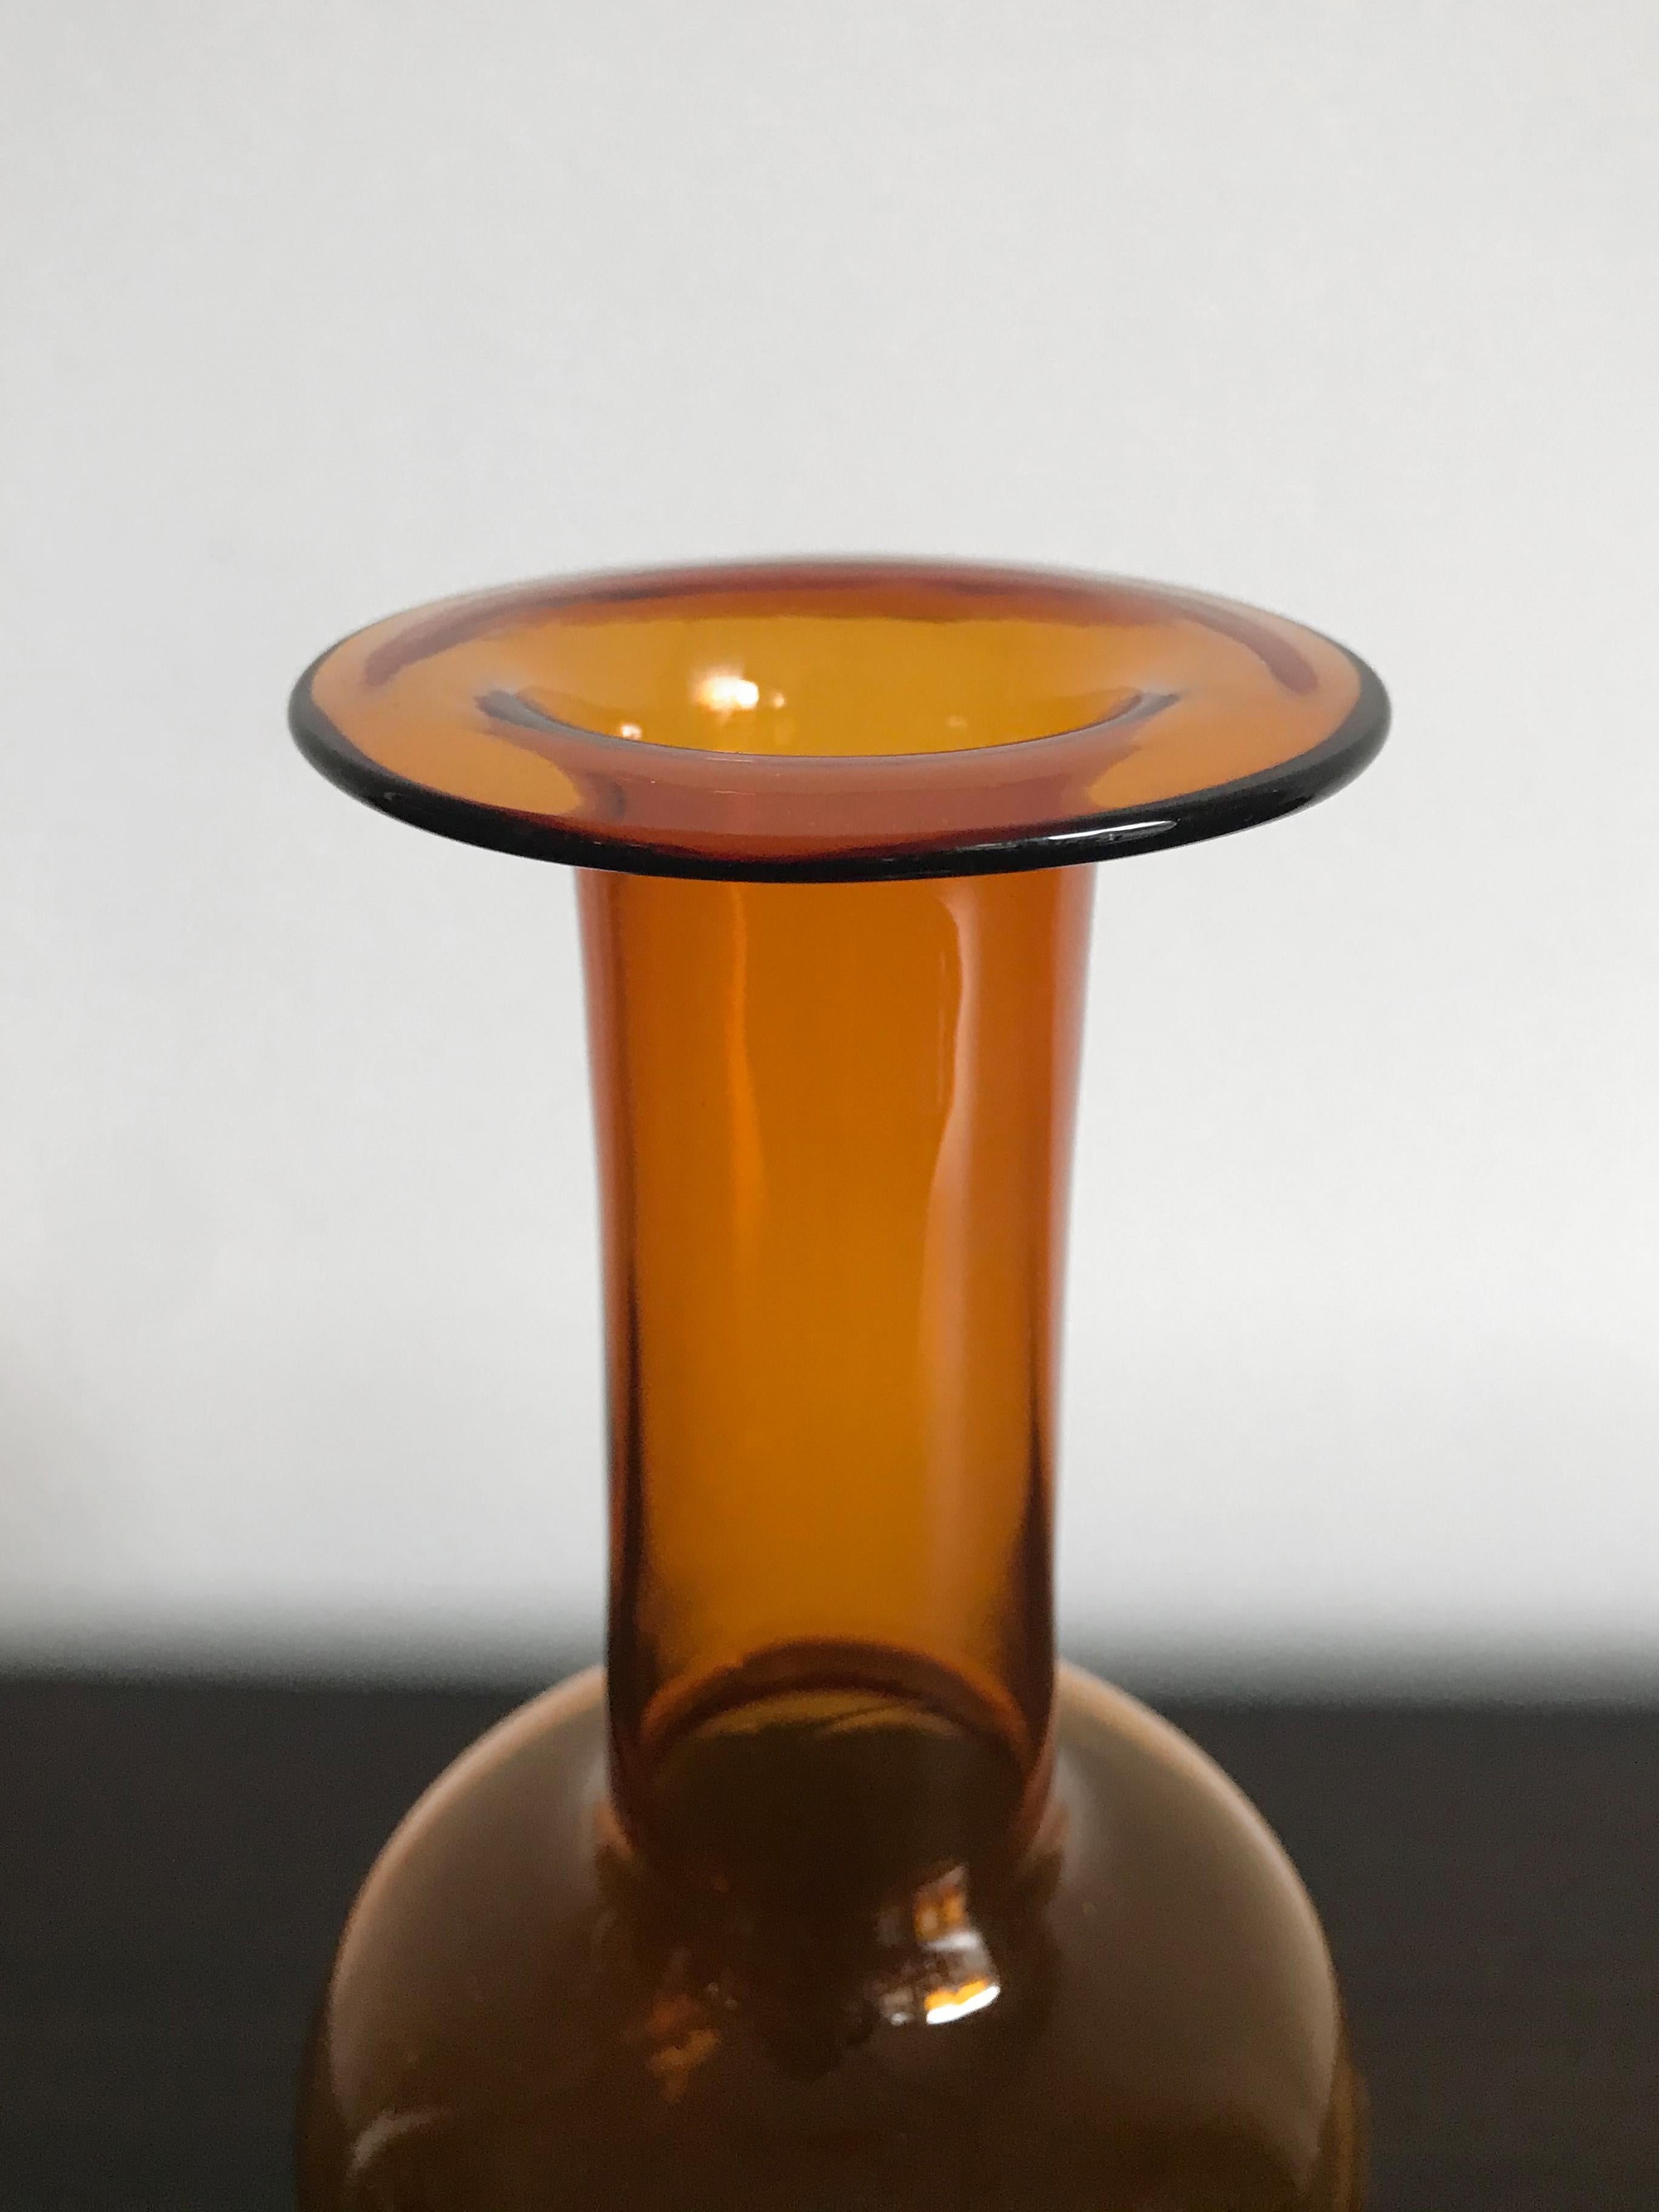 Skandinavische Flasche oder Vase aus gelbem Glas, entworfen von Otto Brauer für Holmegaard, hergestellt in Dänemark in den 1960er Jahren.

Bitte beachten Sie, dass es sich bei der Vase um ein Original aus der damaligen Zeit handelt, das normale